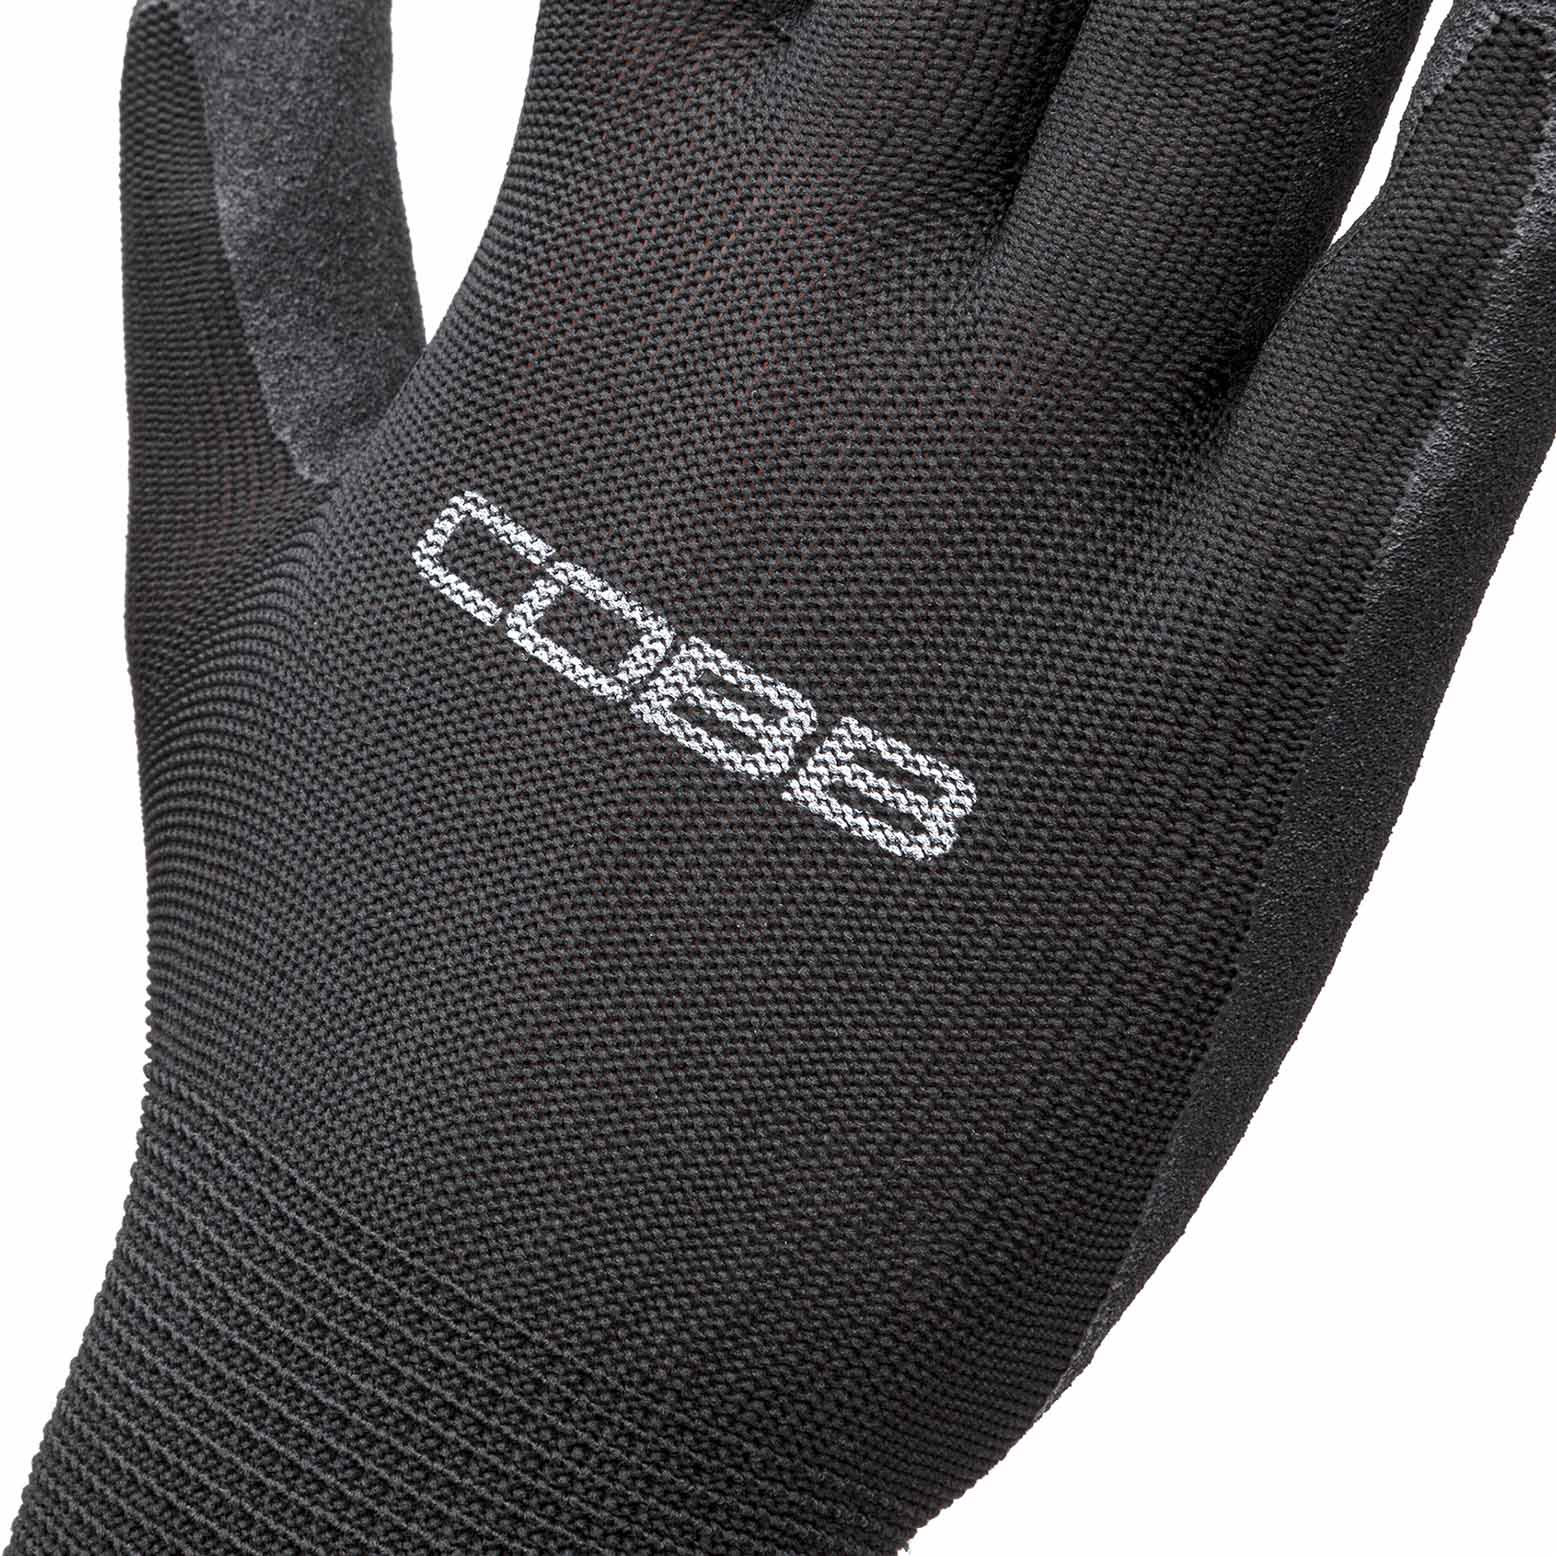 COBB Mechanic Gloves